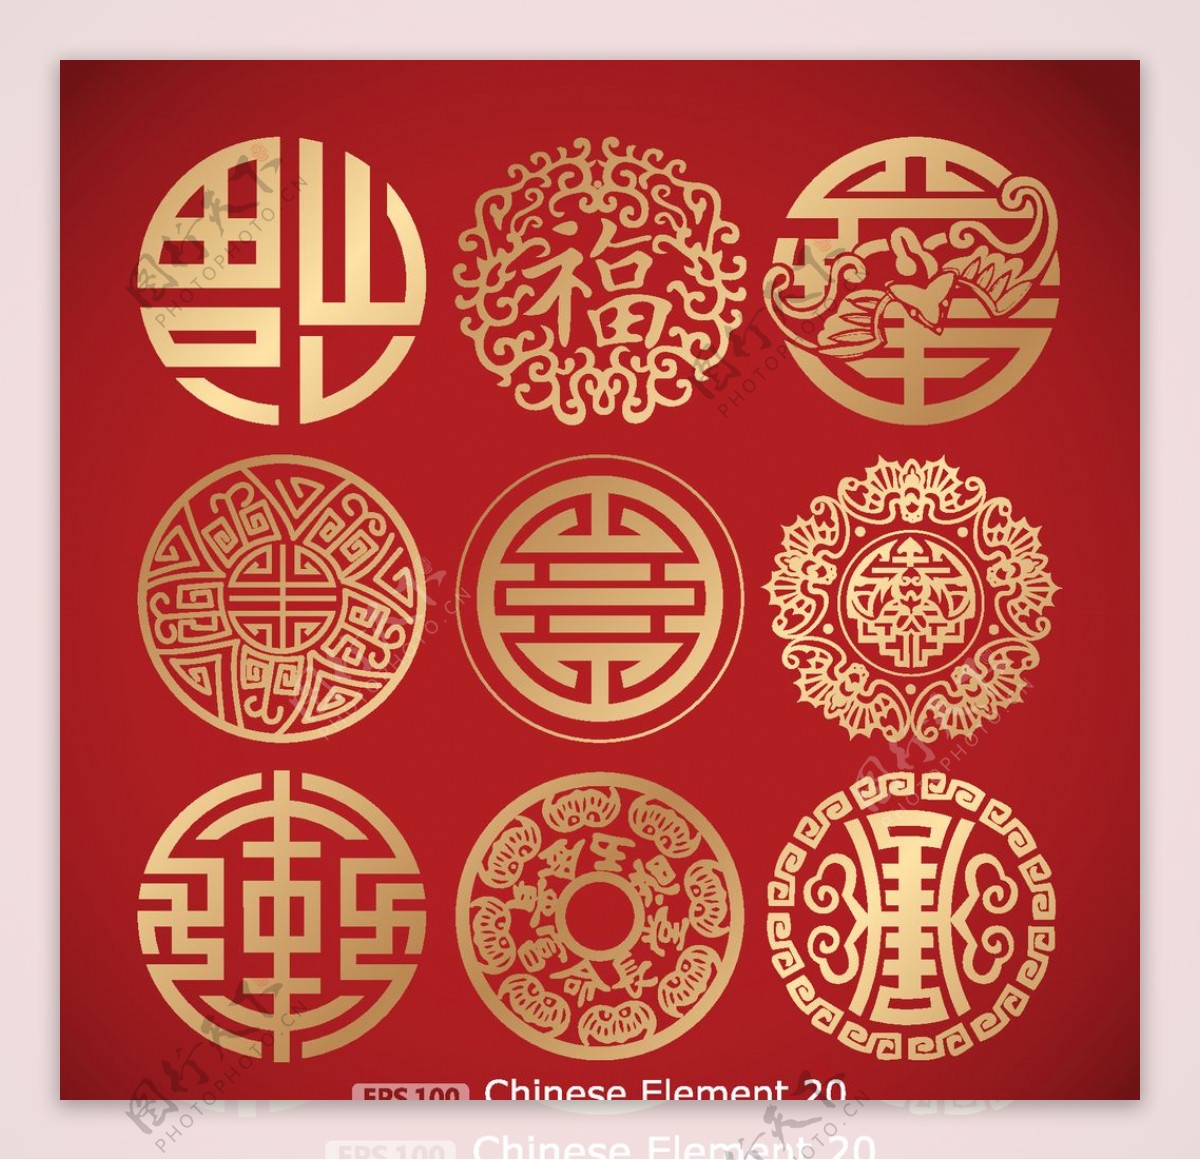 中国传统图案花纹图片